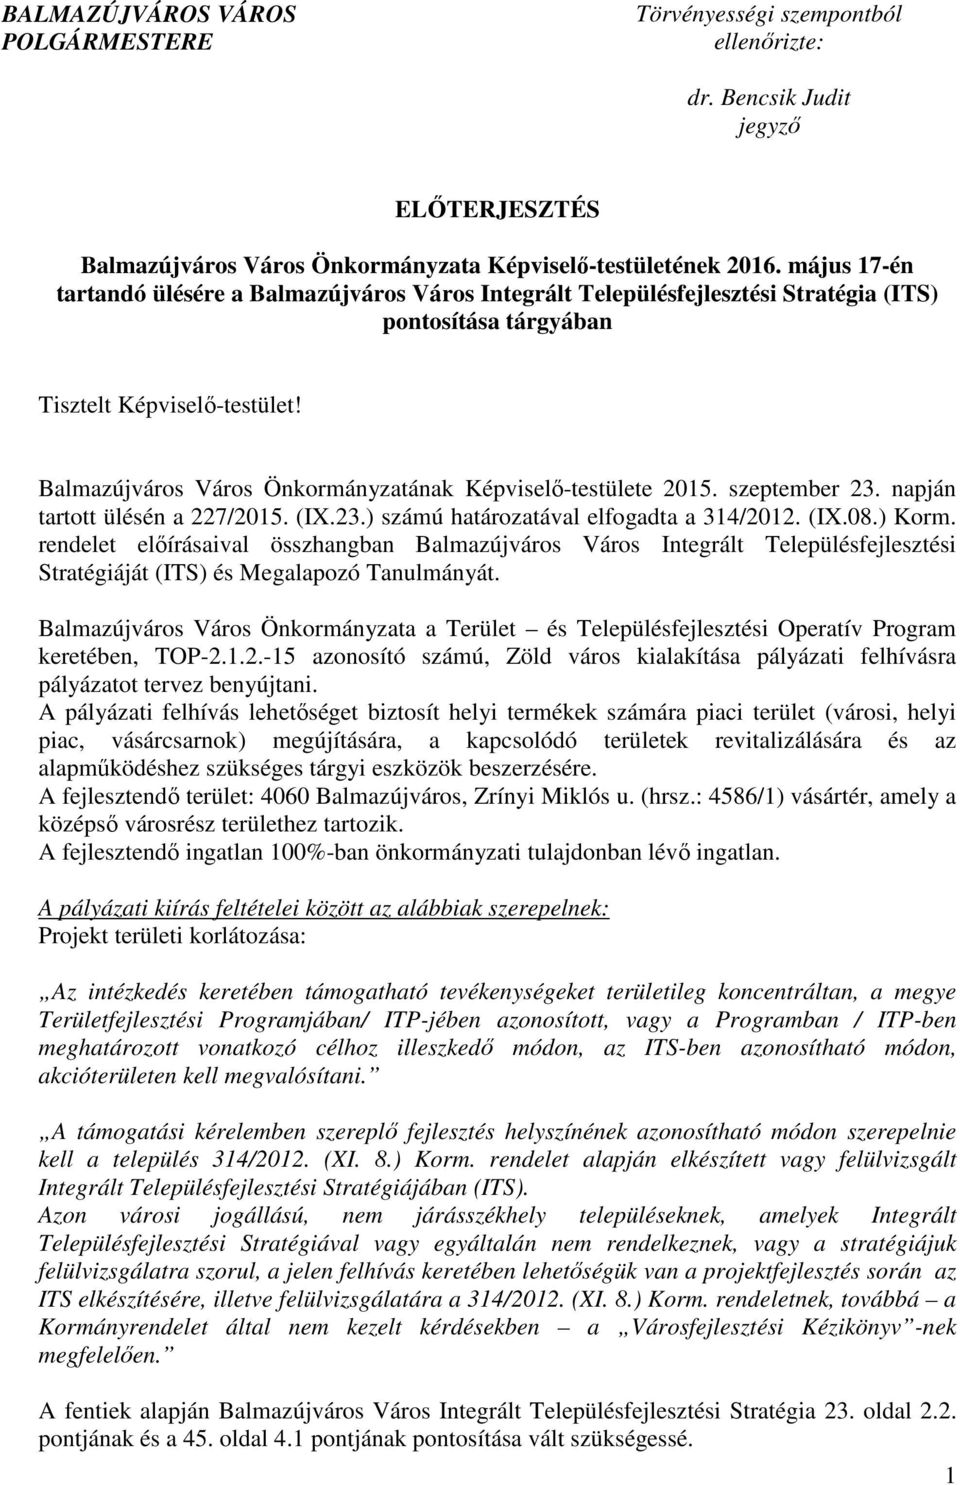 Balmazújváros Város Önkormányzatának Képviselő-testülete 2015. szeptember 23. napján tartott ülésén a 227/2015. (IX.23.) számú határozatával elfogadta a 314/2012. (IX.08.) Korm.